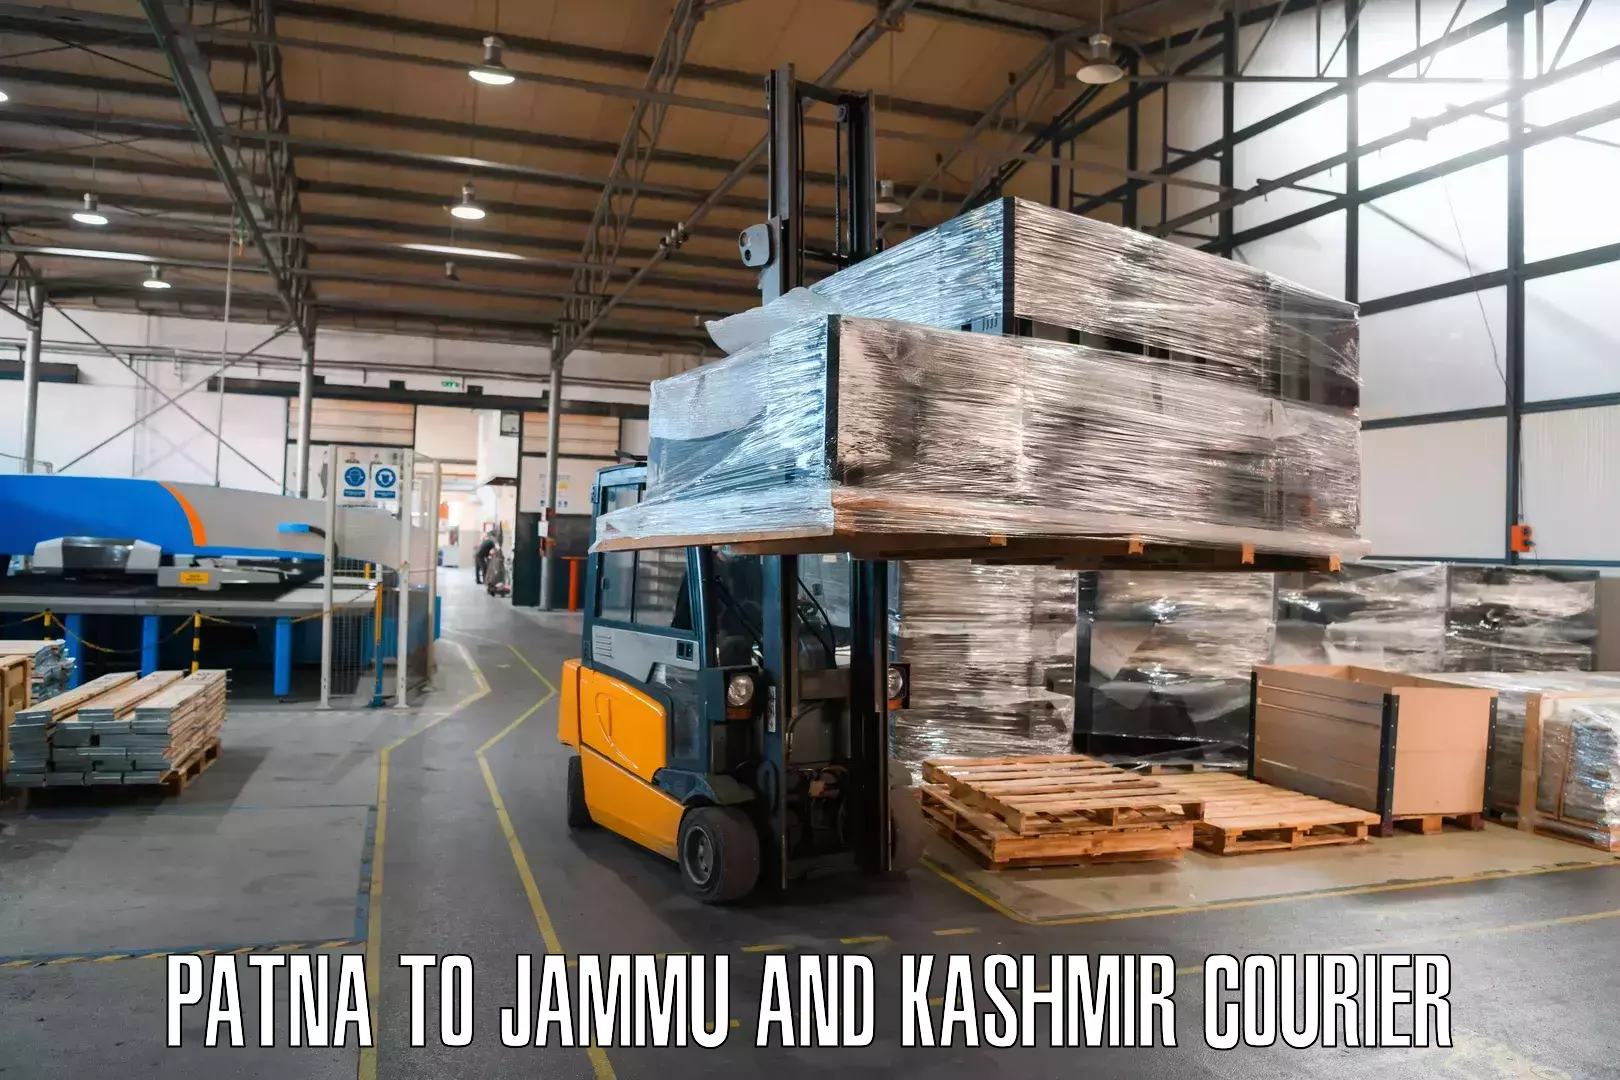 Cash on delivery service Patna to Jammu